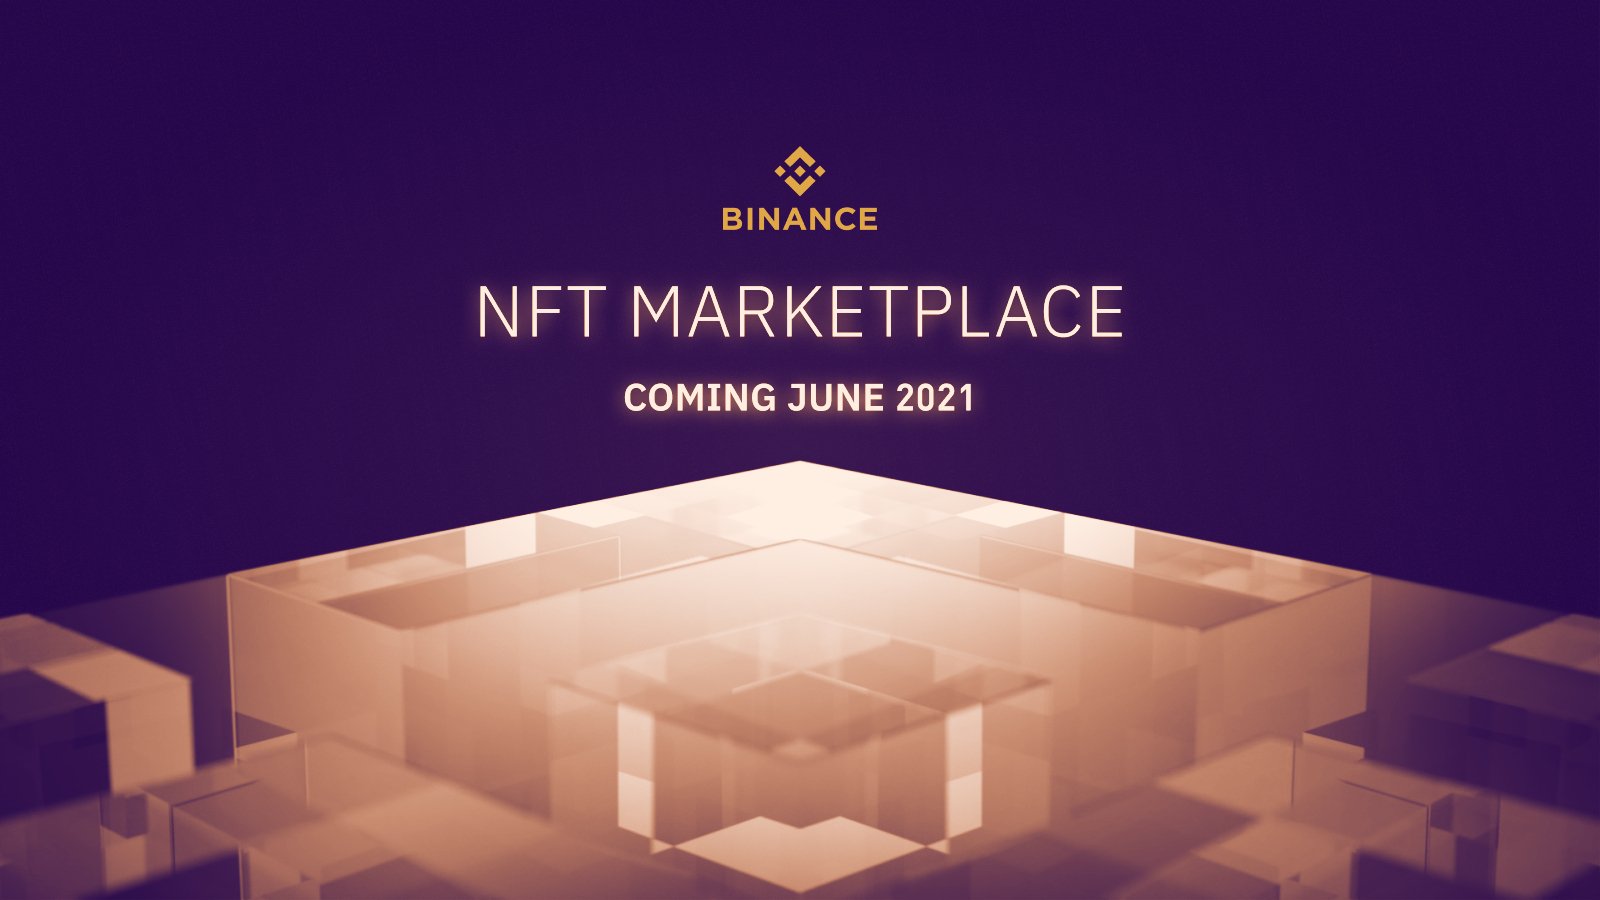 ستطلق Binance سوق NFT الخاص بها في يونيو